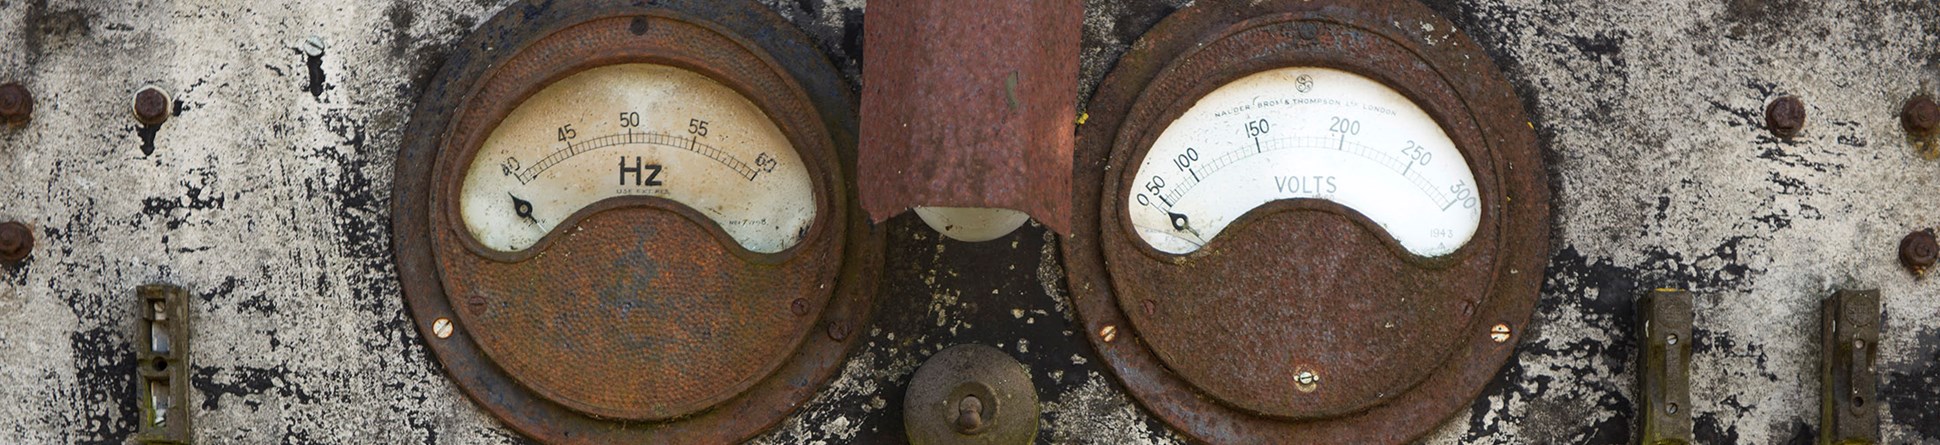 Boiler gauges at Westonzoyland Pumping Station, Somerset